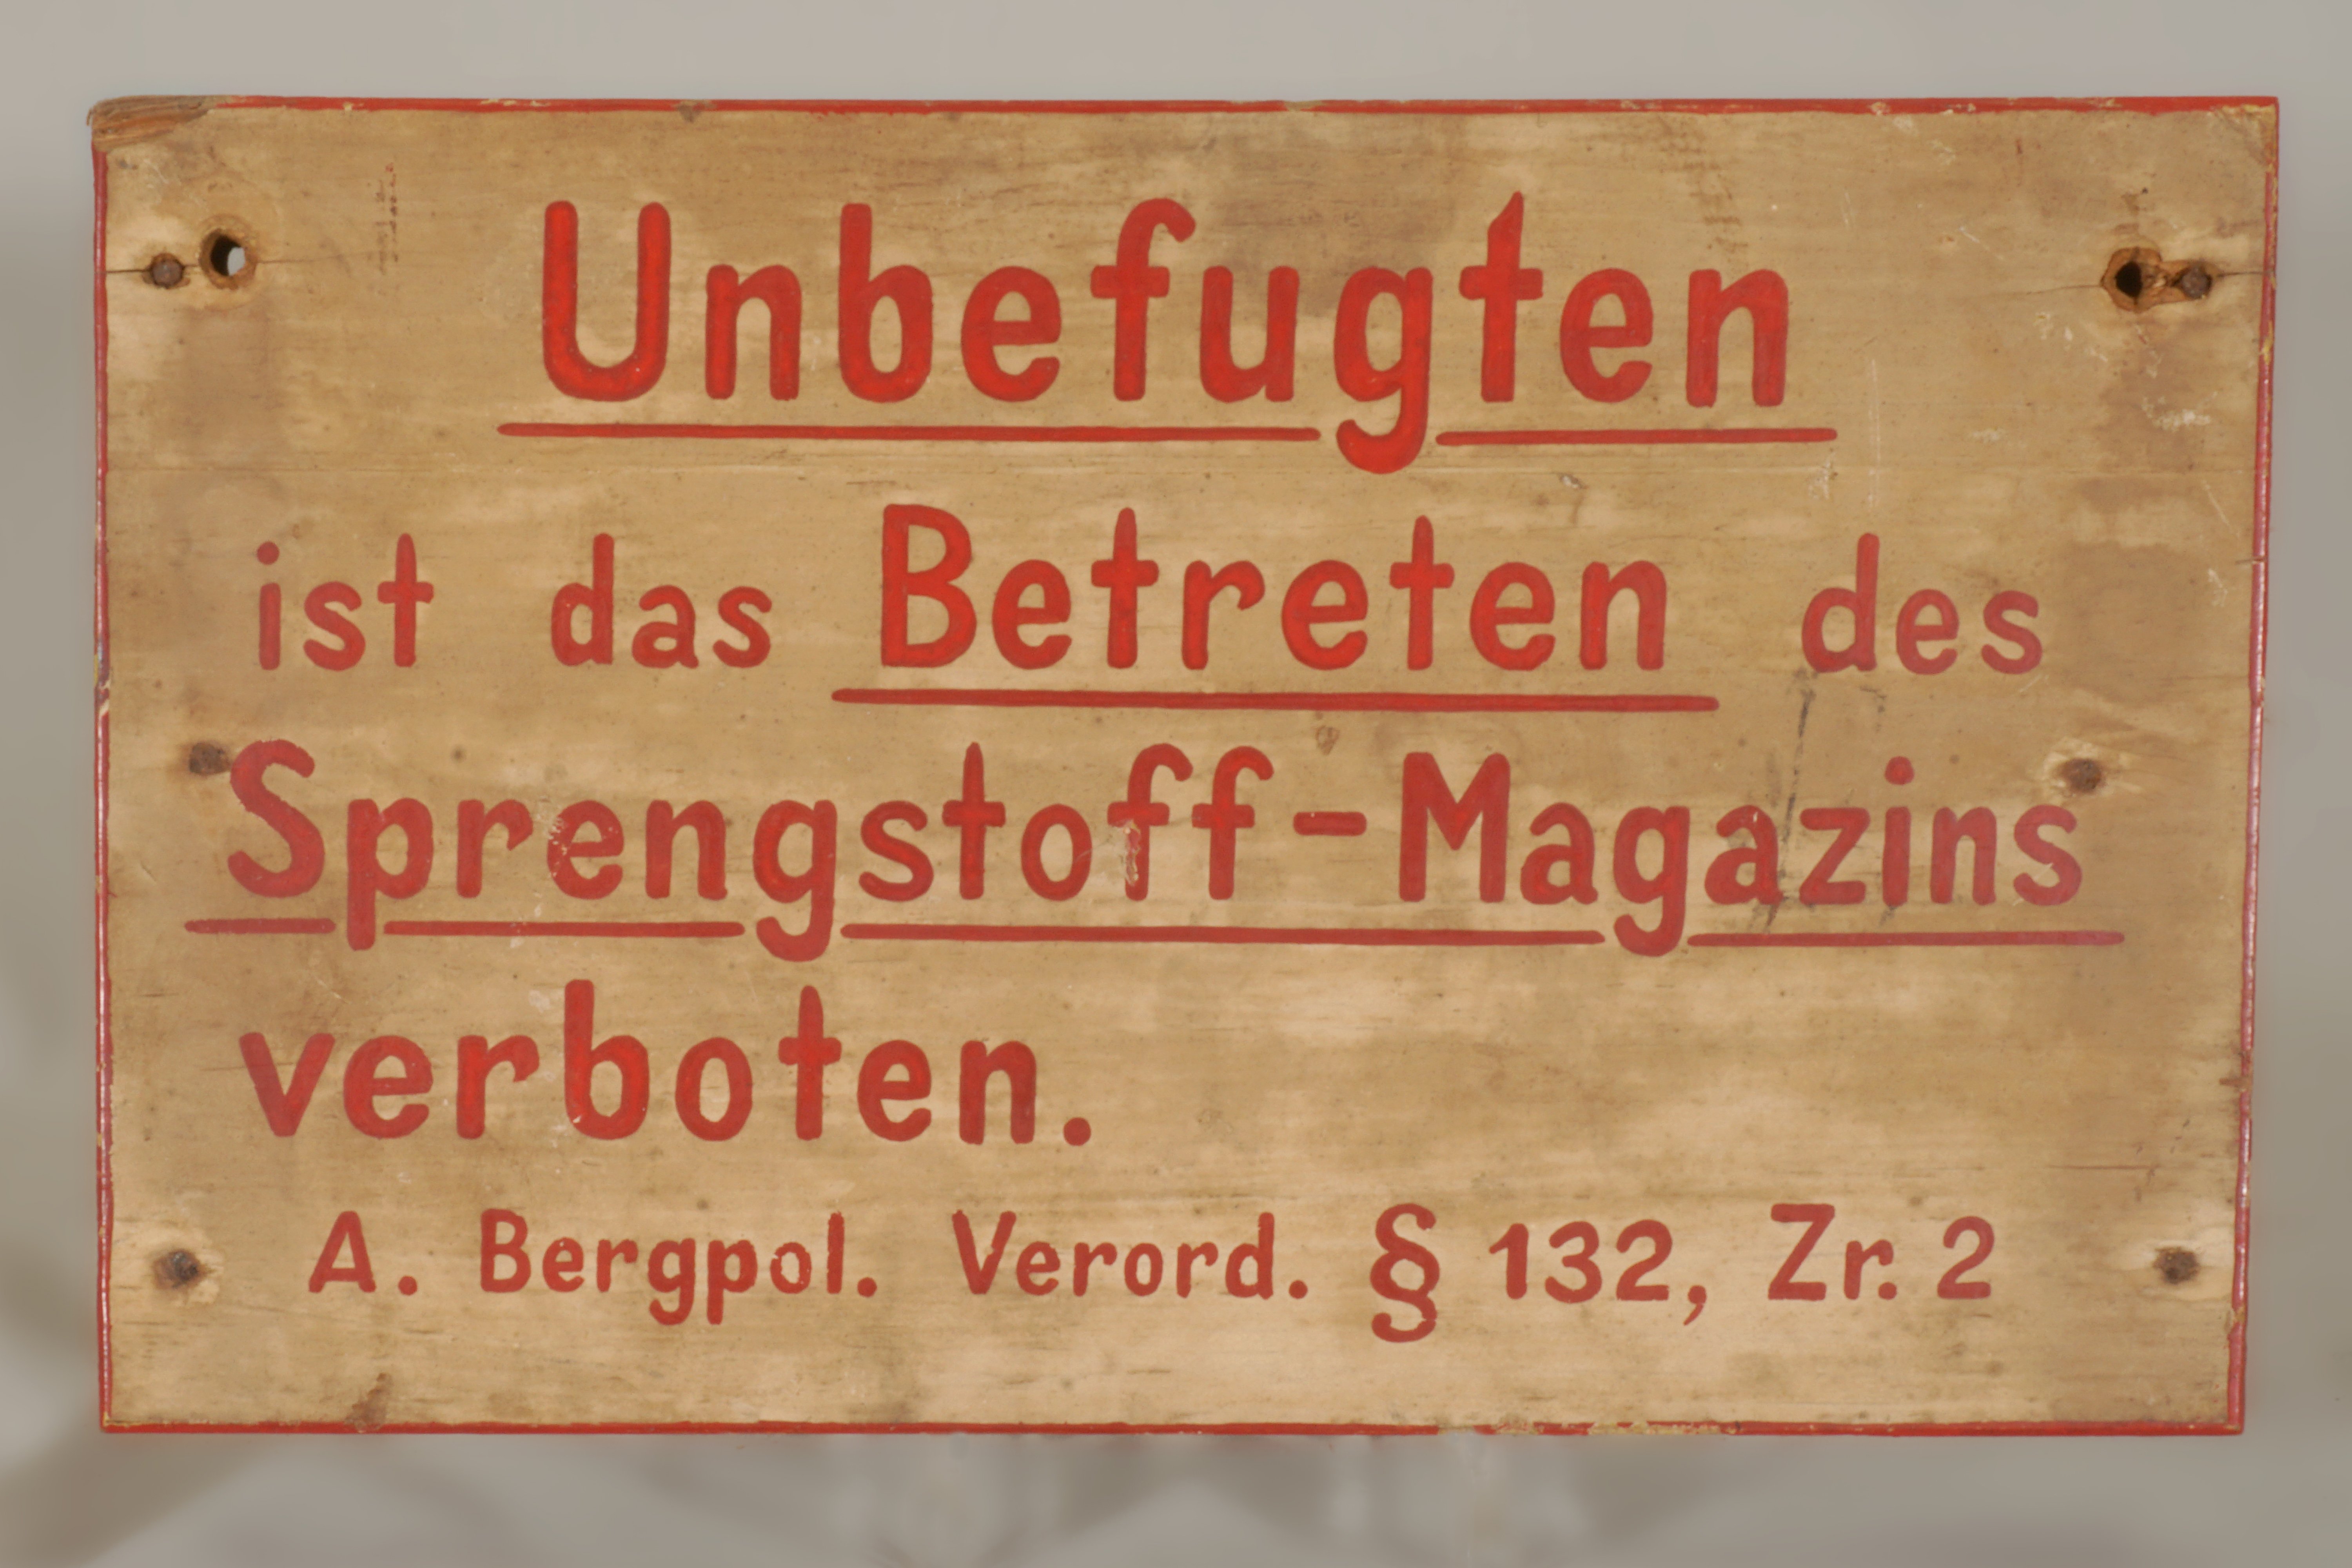 Holztafe 'Unbefugten ist das Betreten des Sprengstoff-Magazins verboten' (Werra-Kalibergbau-Museum, Heringen/W. CC BY-NC-SA)